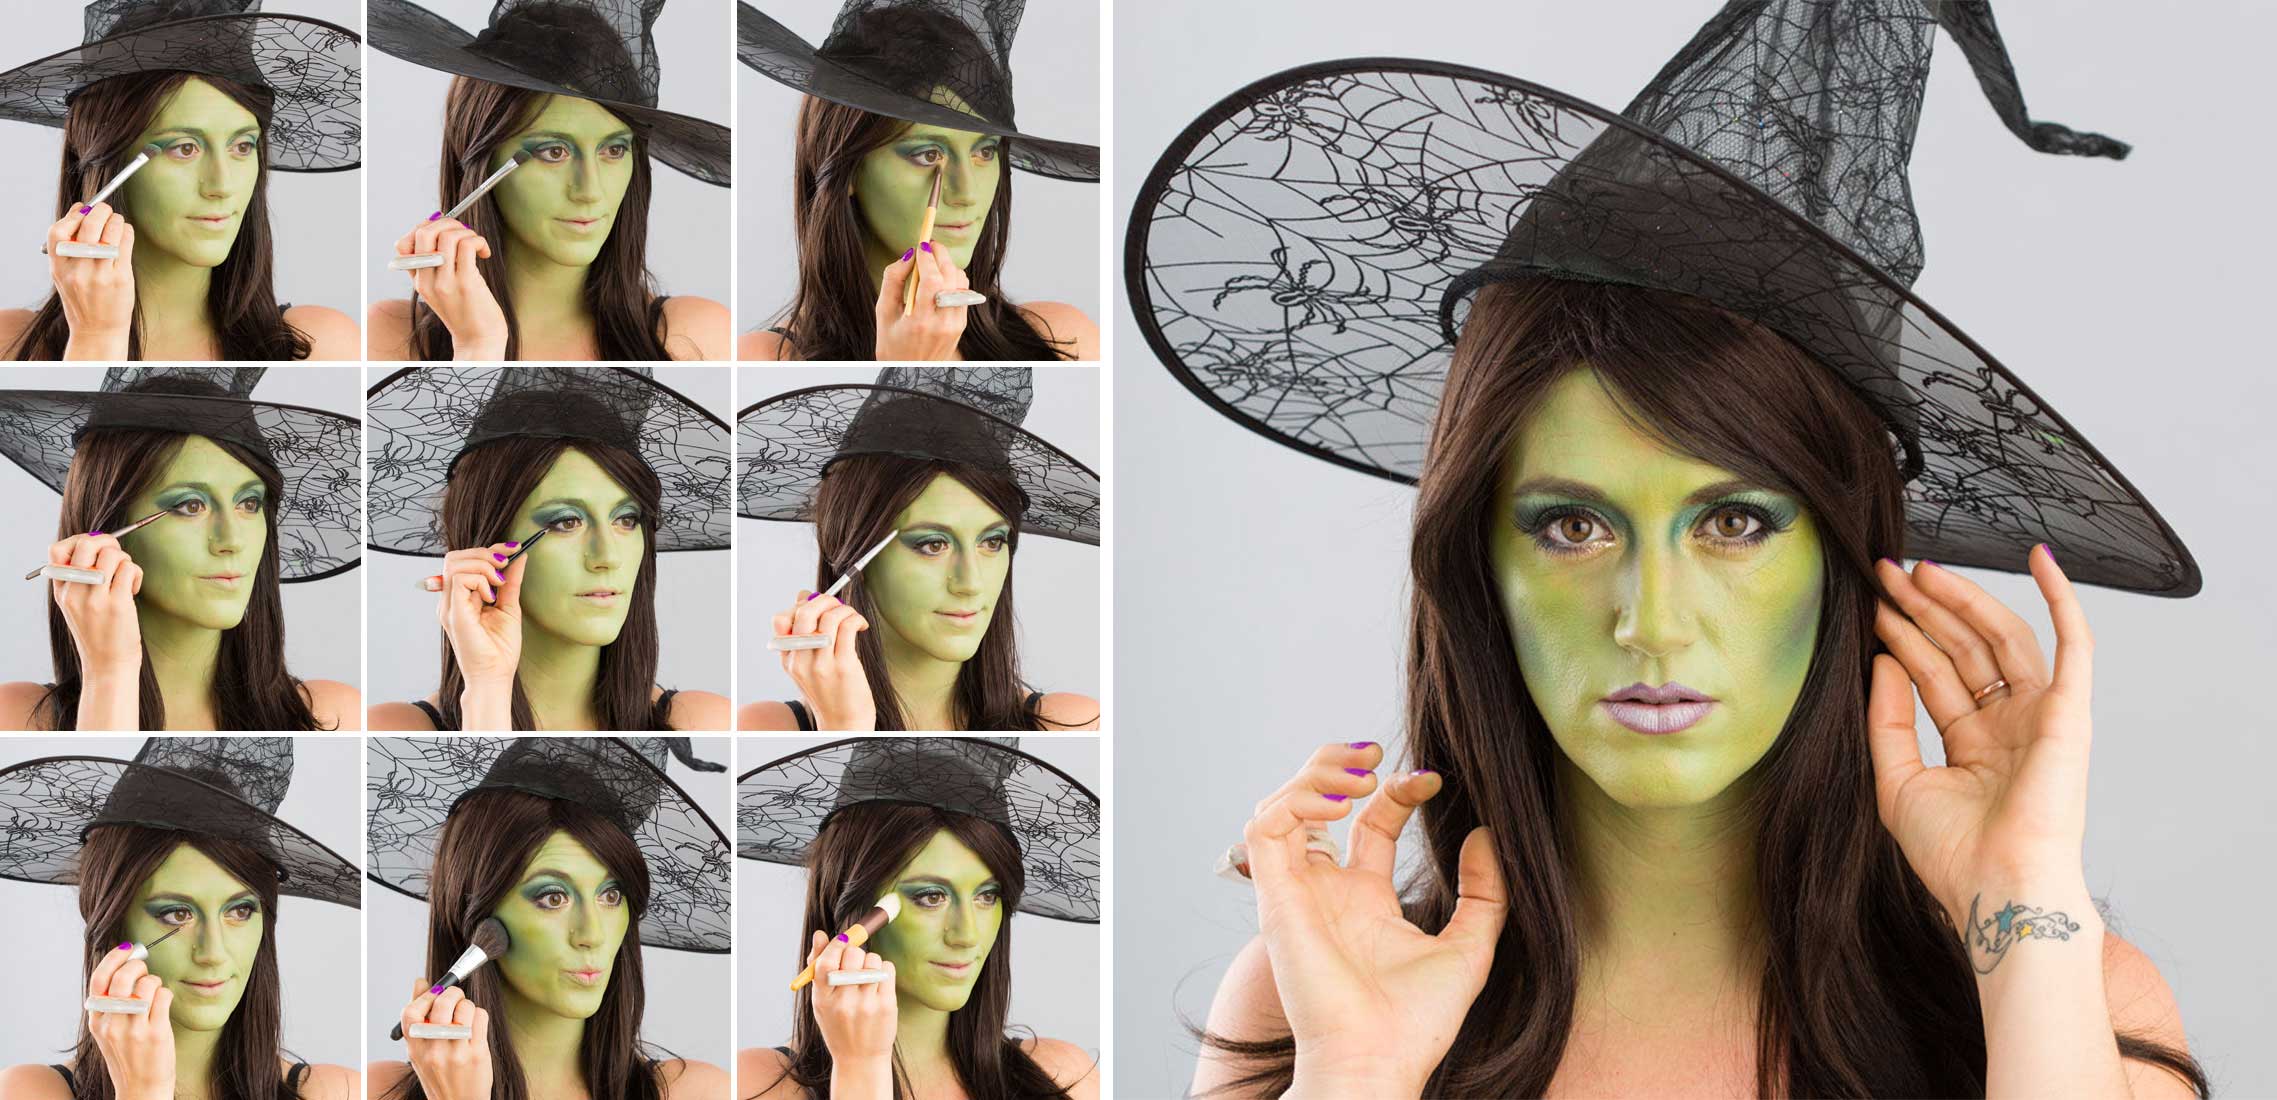 Макияж ведьмы на хеллоуин, вечеринки и праздники » womanmirror
макияж ведьмы на хеллоуин, вечеринки и праздники